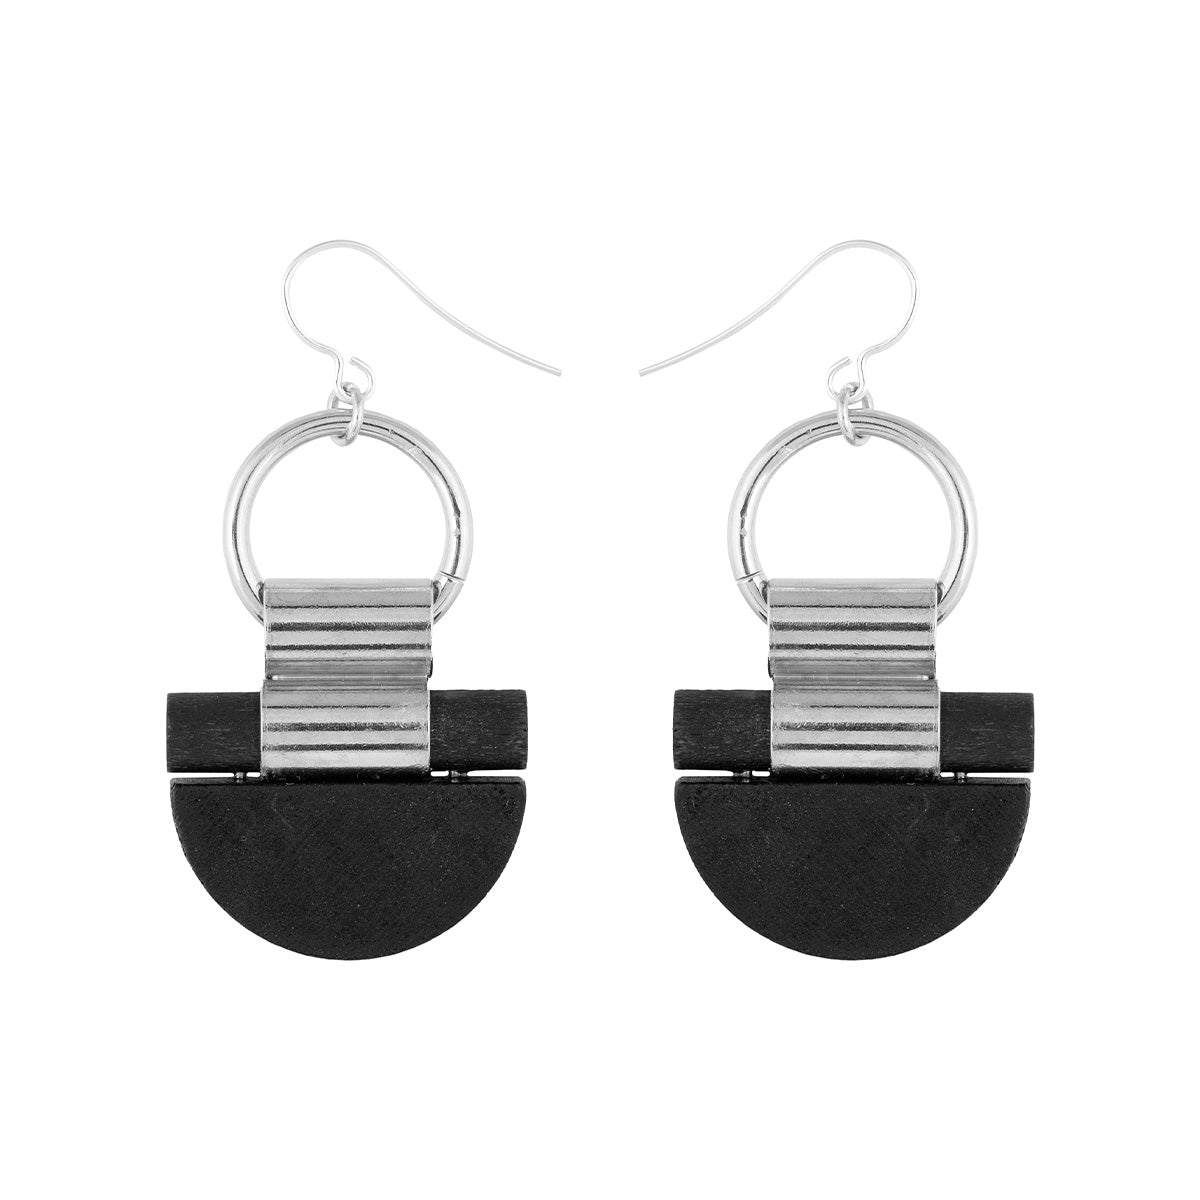 Kelohonka earrings, black